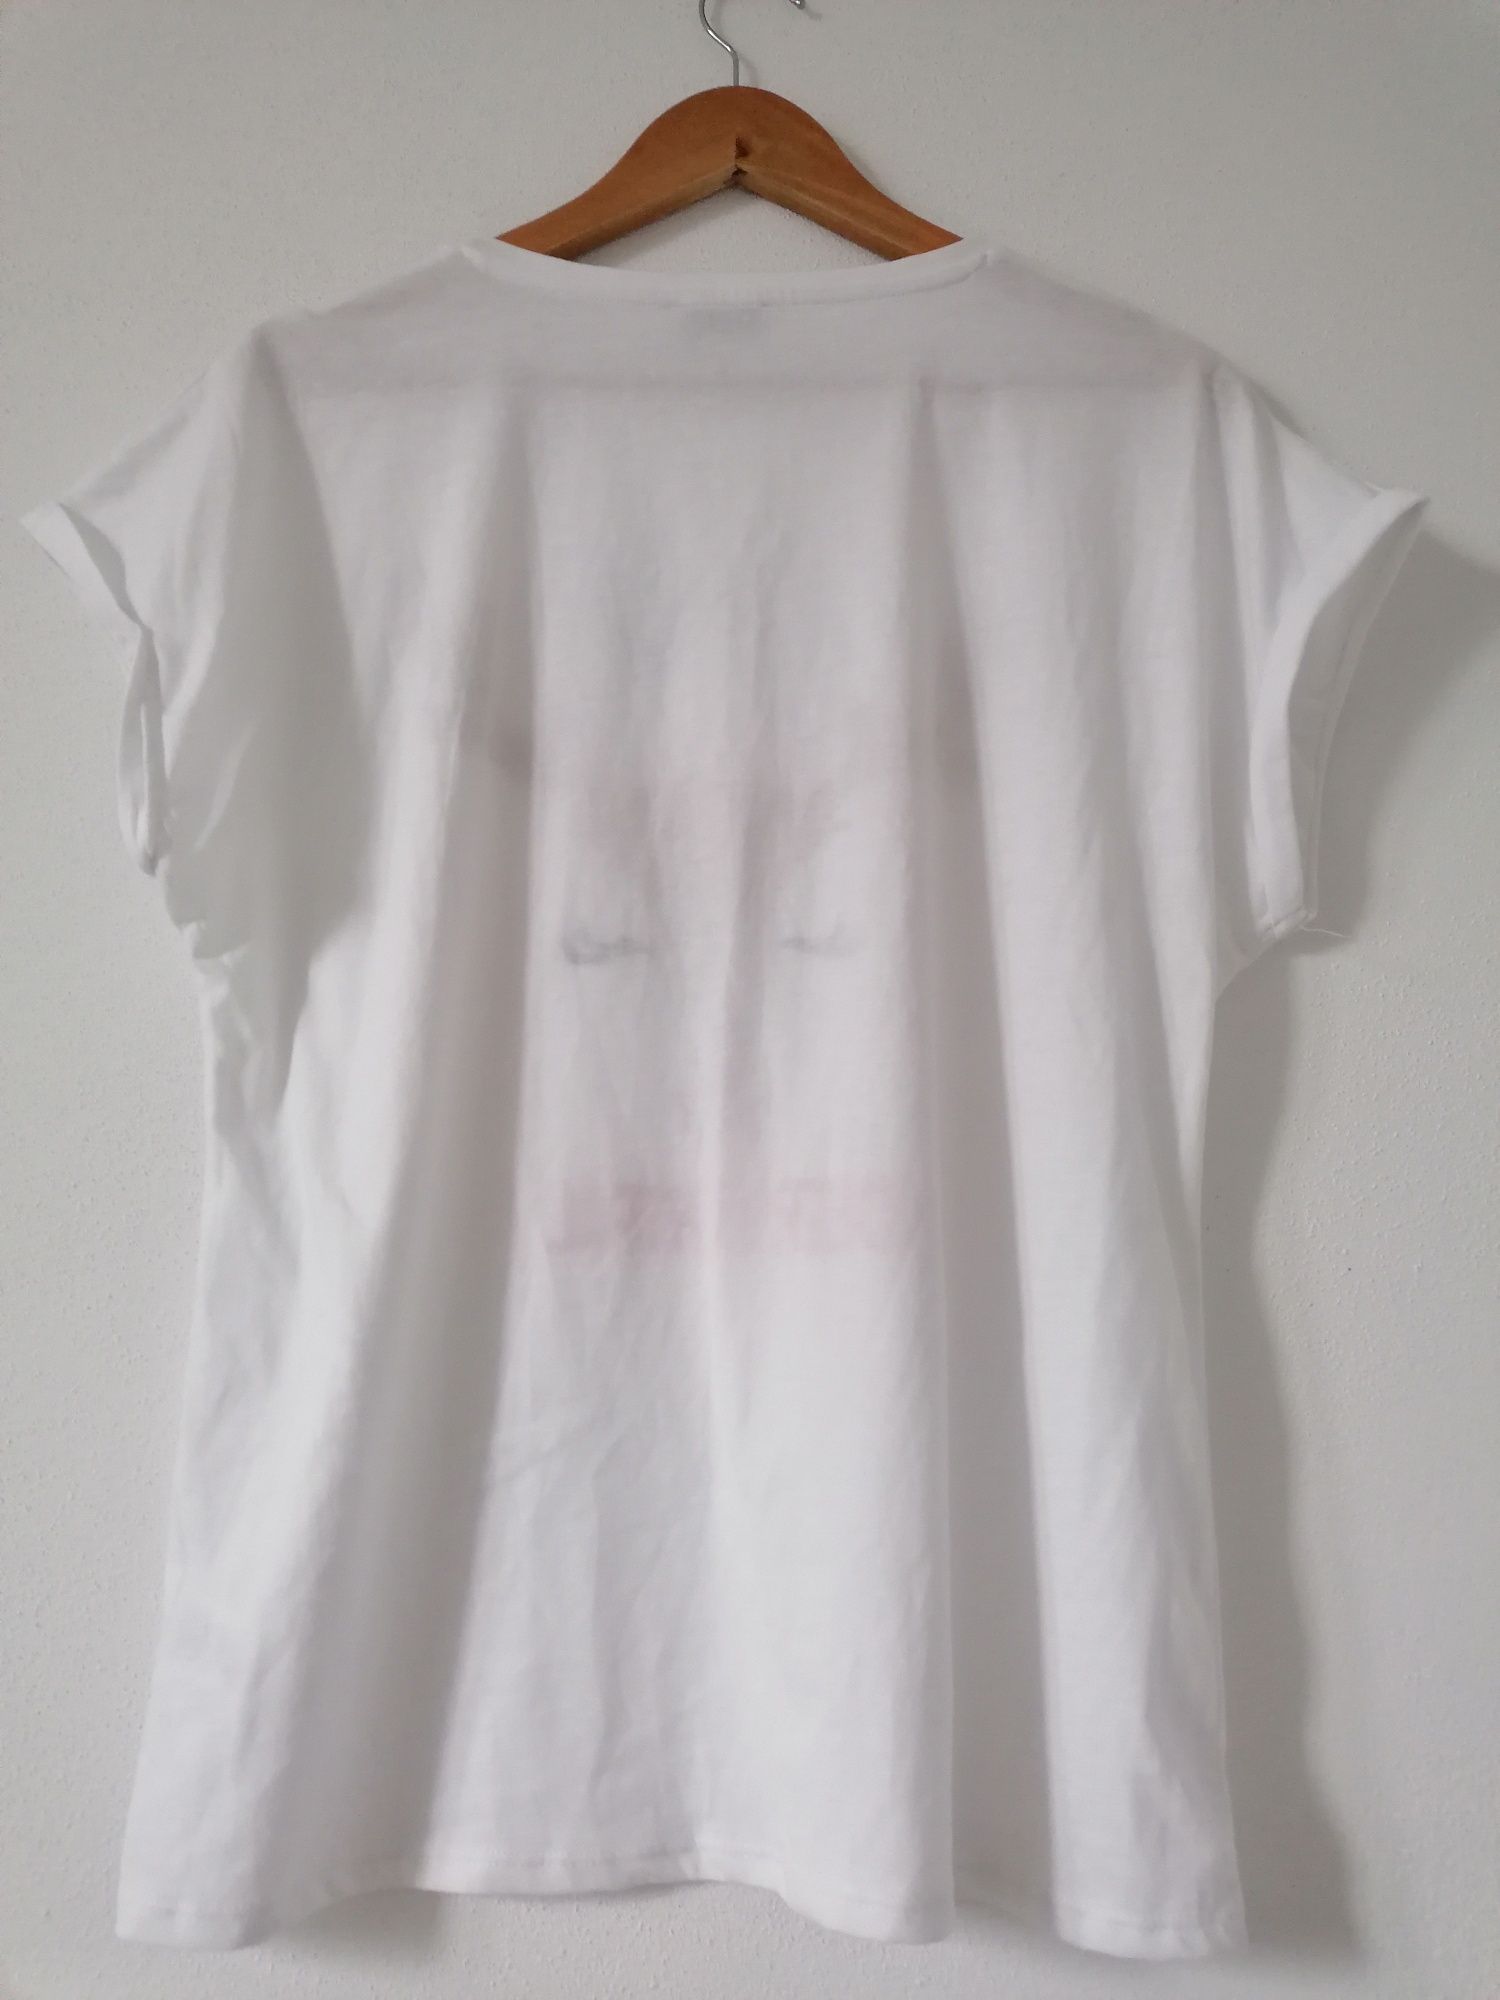 Koszulka T-shirt świąteczna nowa Papaya renifer M 38 10